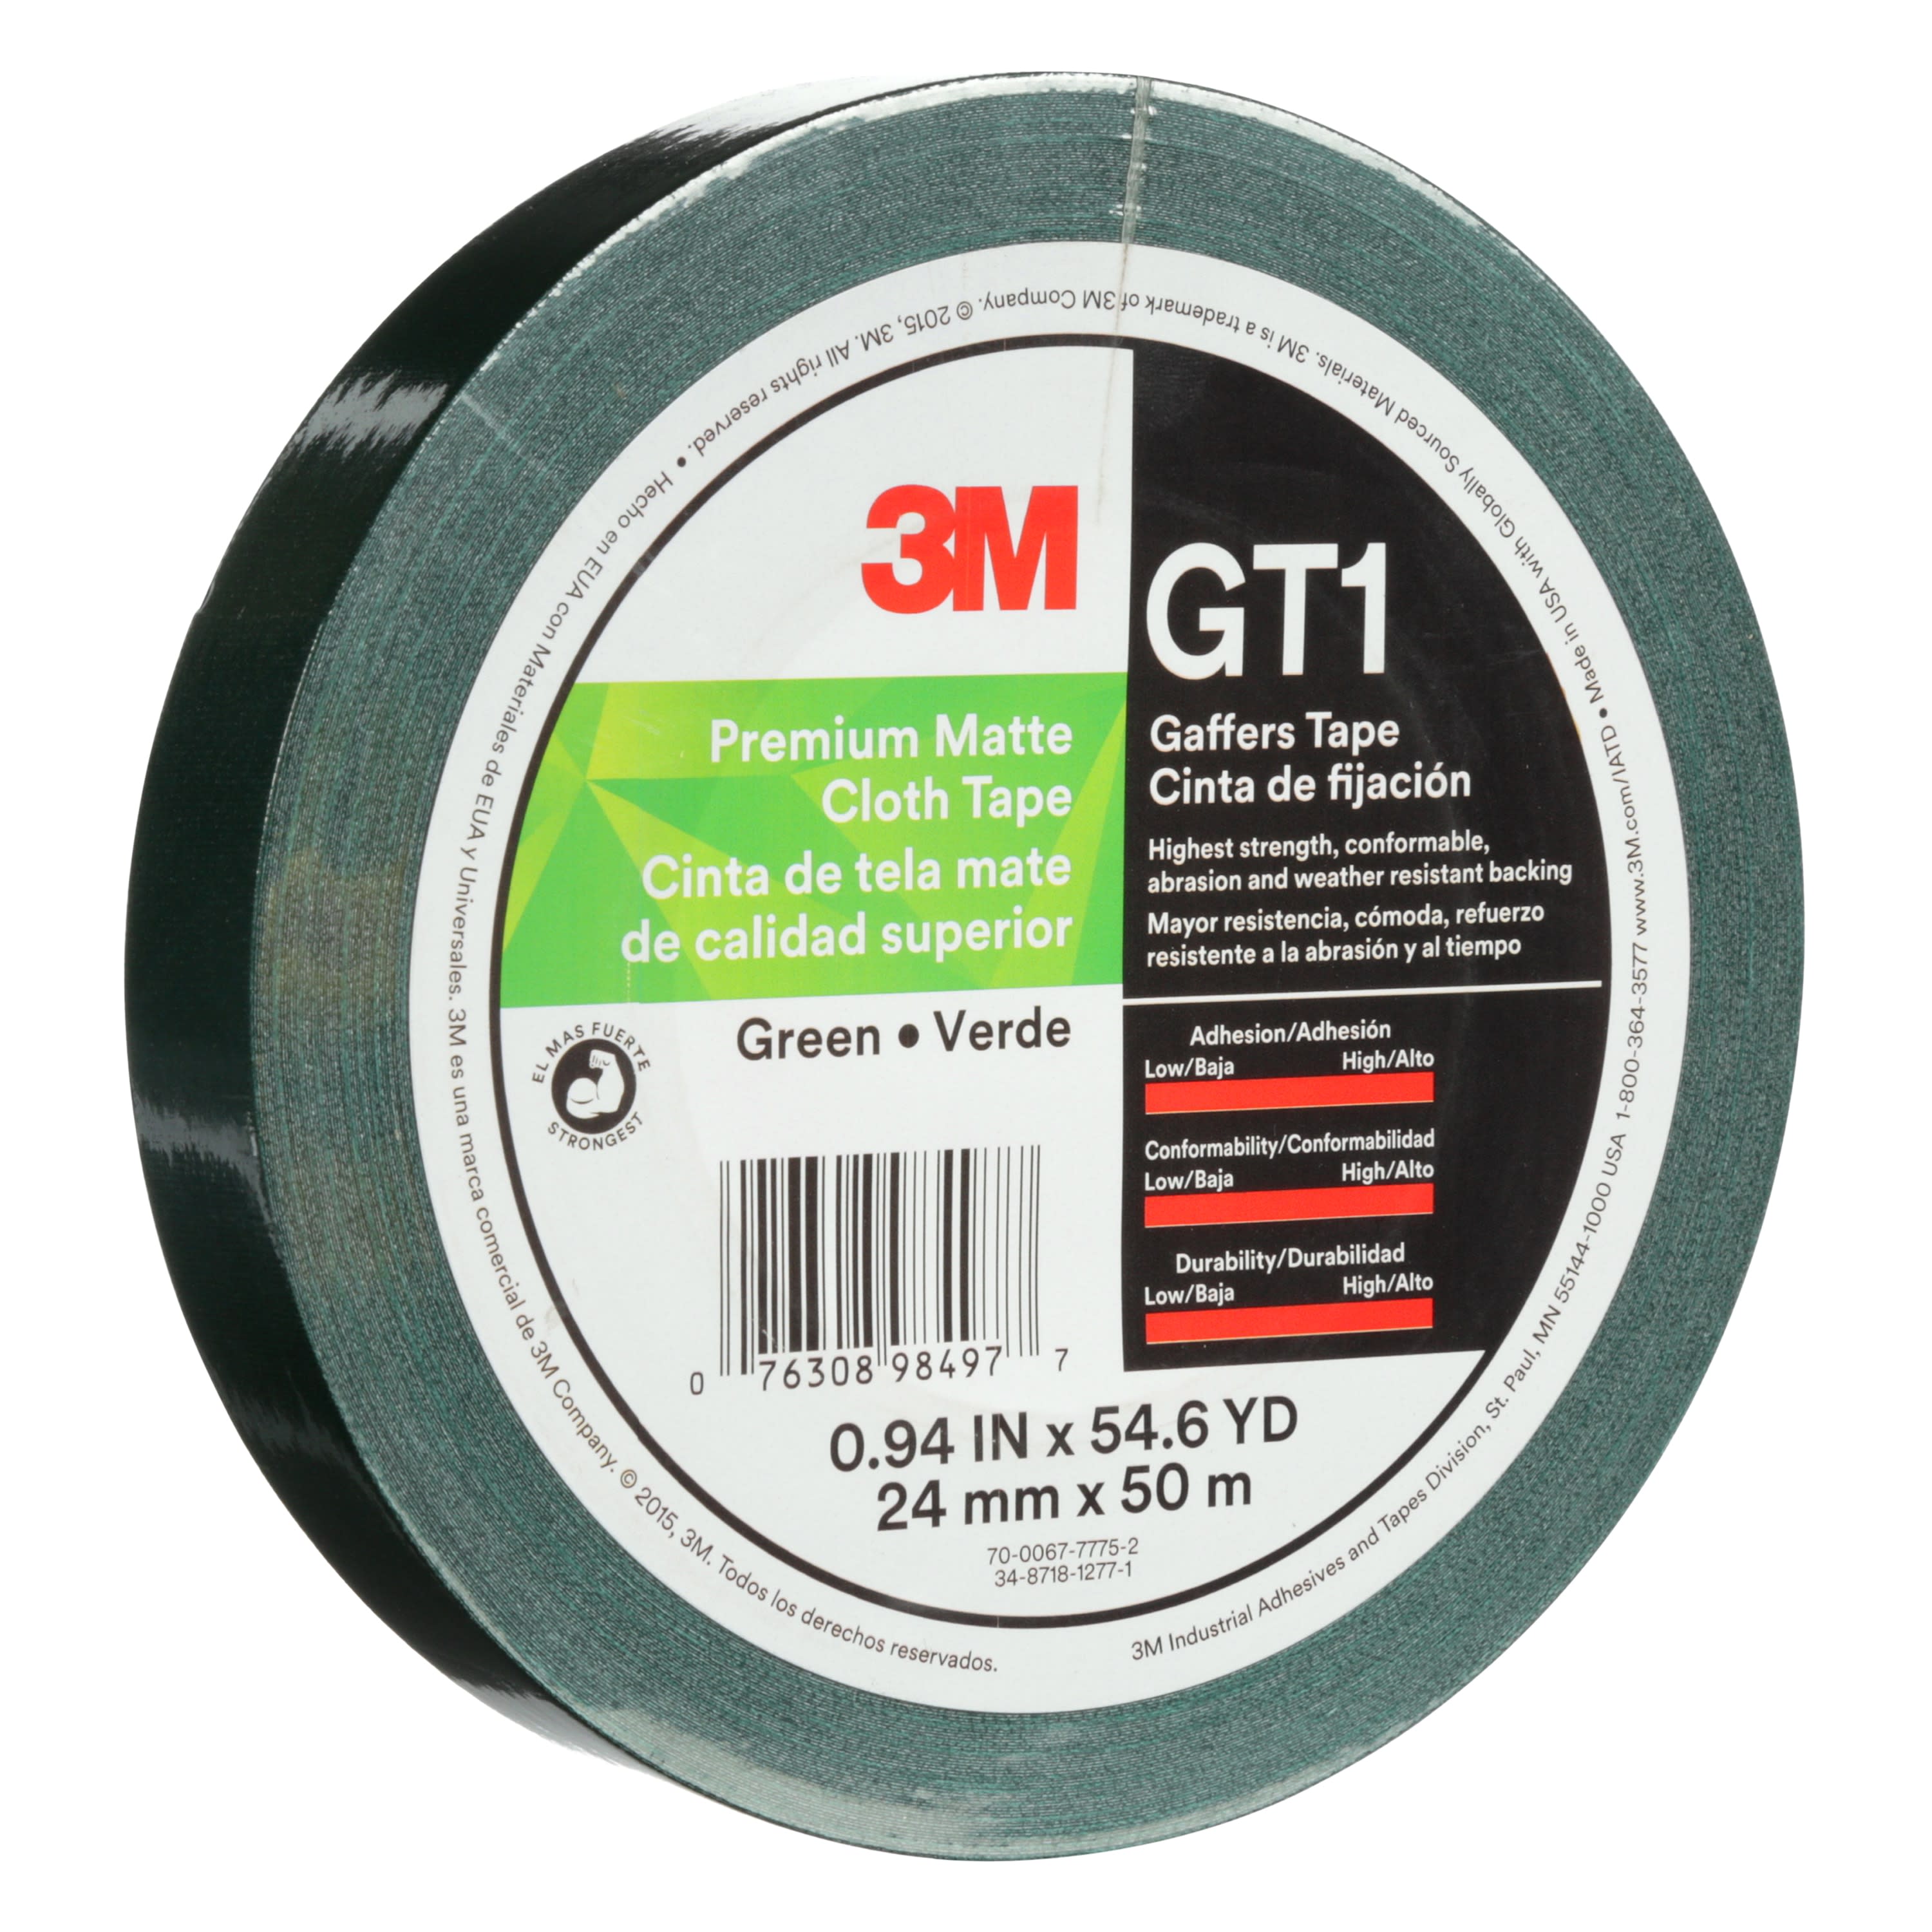 3M™ Premium Matte Cloth (Gaffers) Tape GT1, Green, 24 mm x 50 m, 11 mil,
48 per case